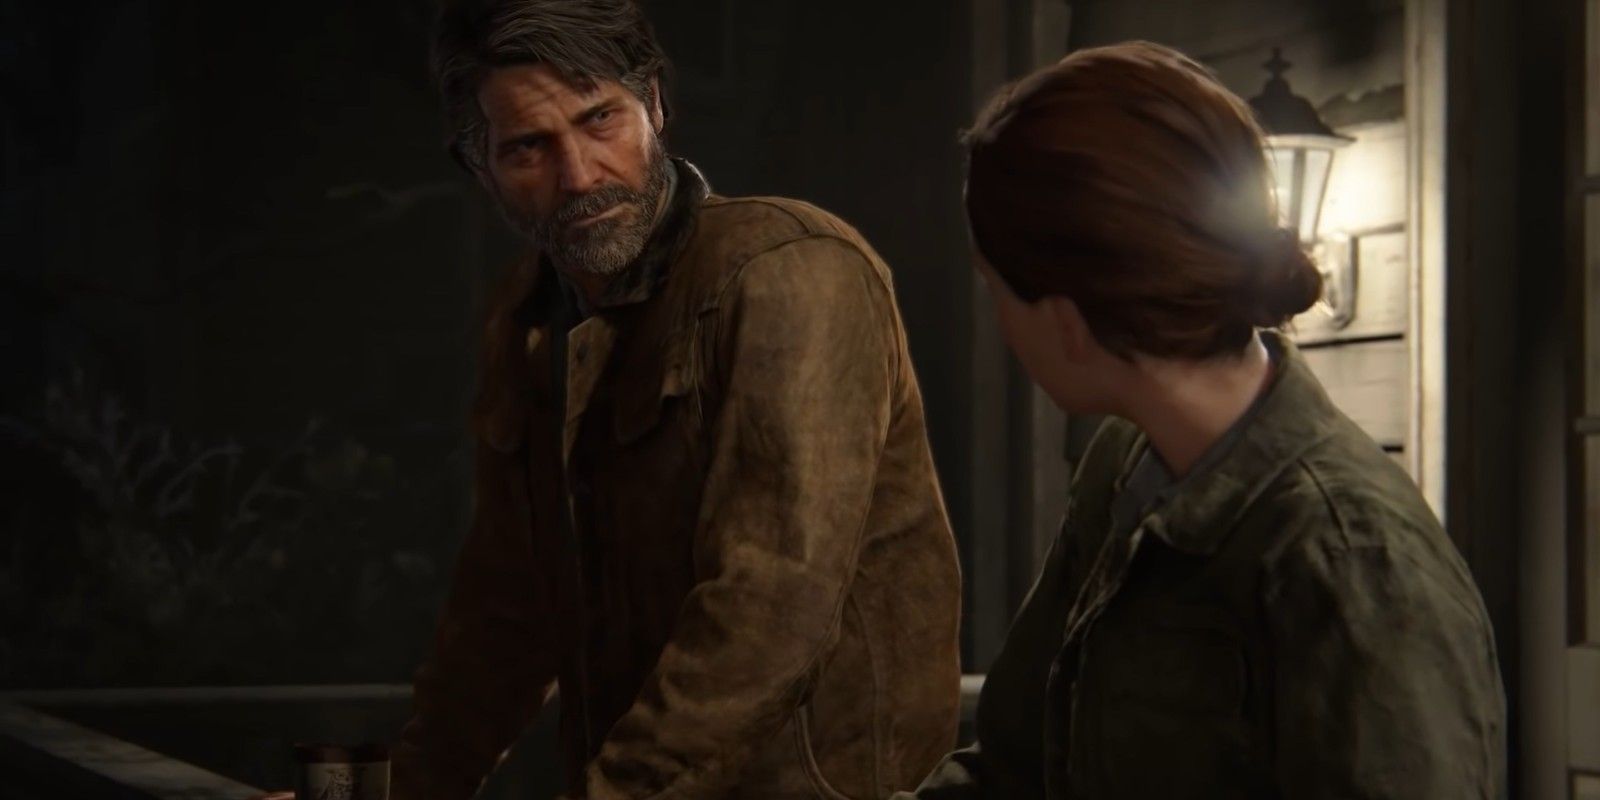 Joel talking to Ellie in The Last of Us 2